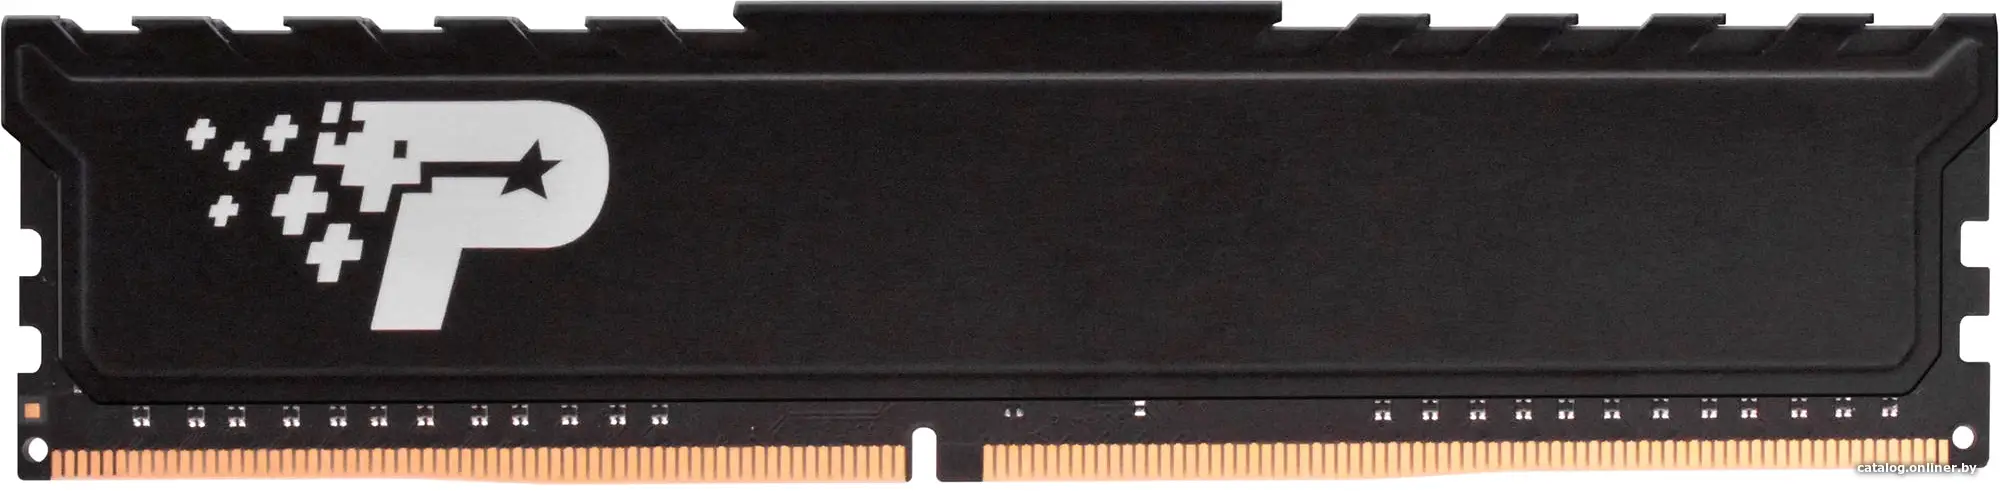 Оперативная память Patriot DDR 4 DIMM 16Gb PC21300 2666Mhz (PSP416G26662H1)